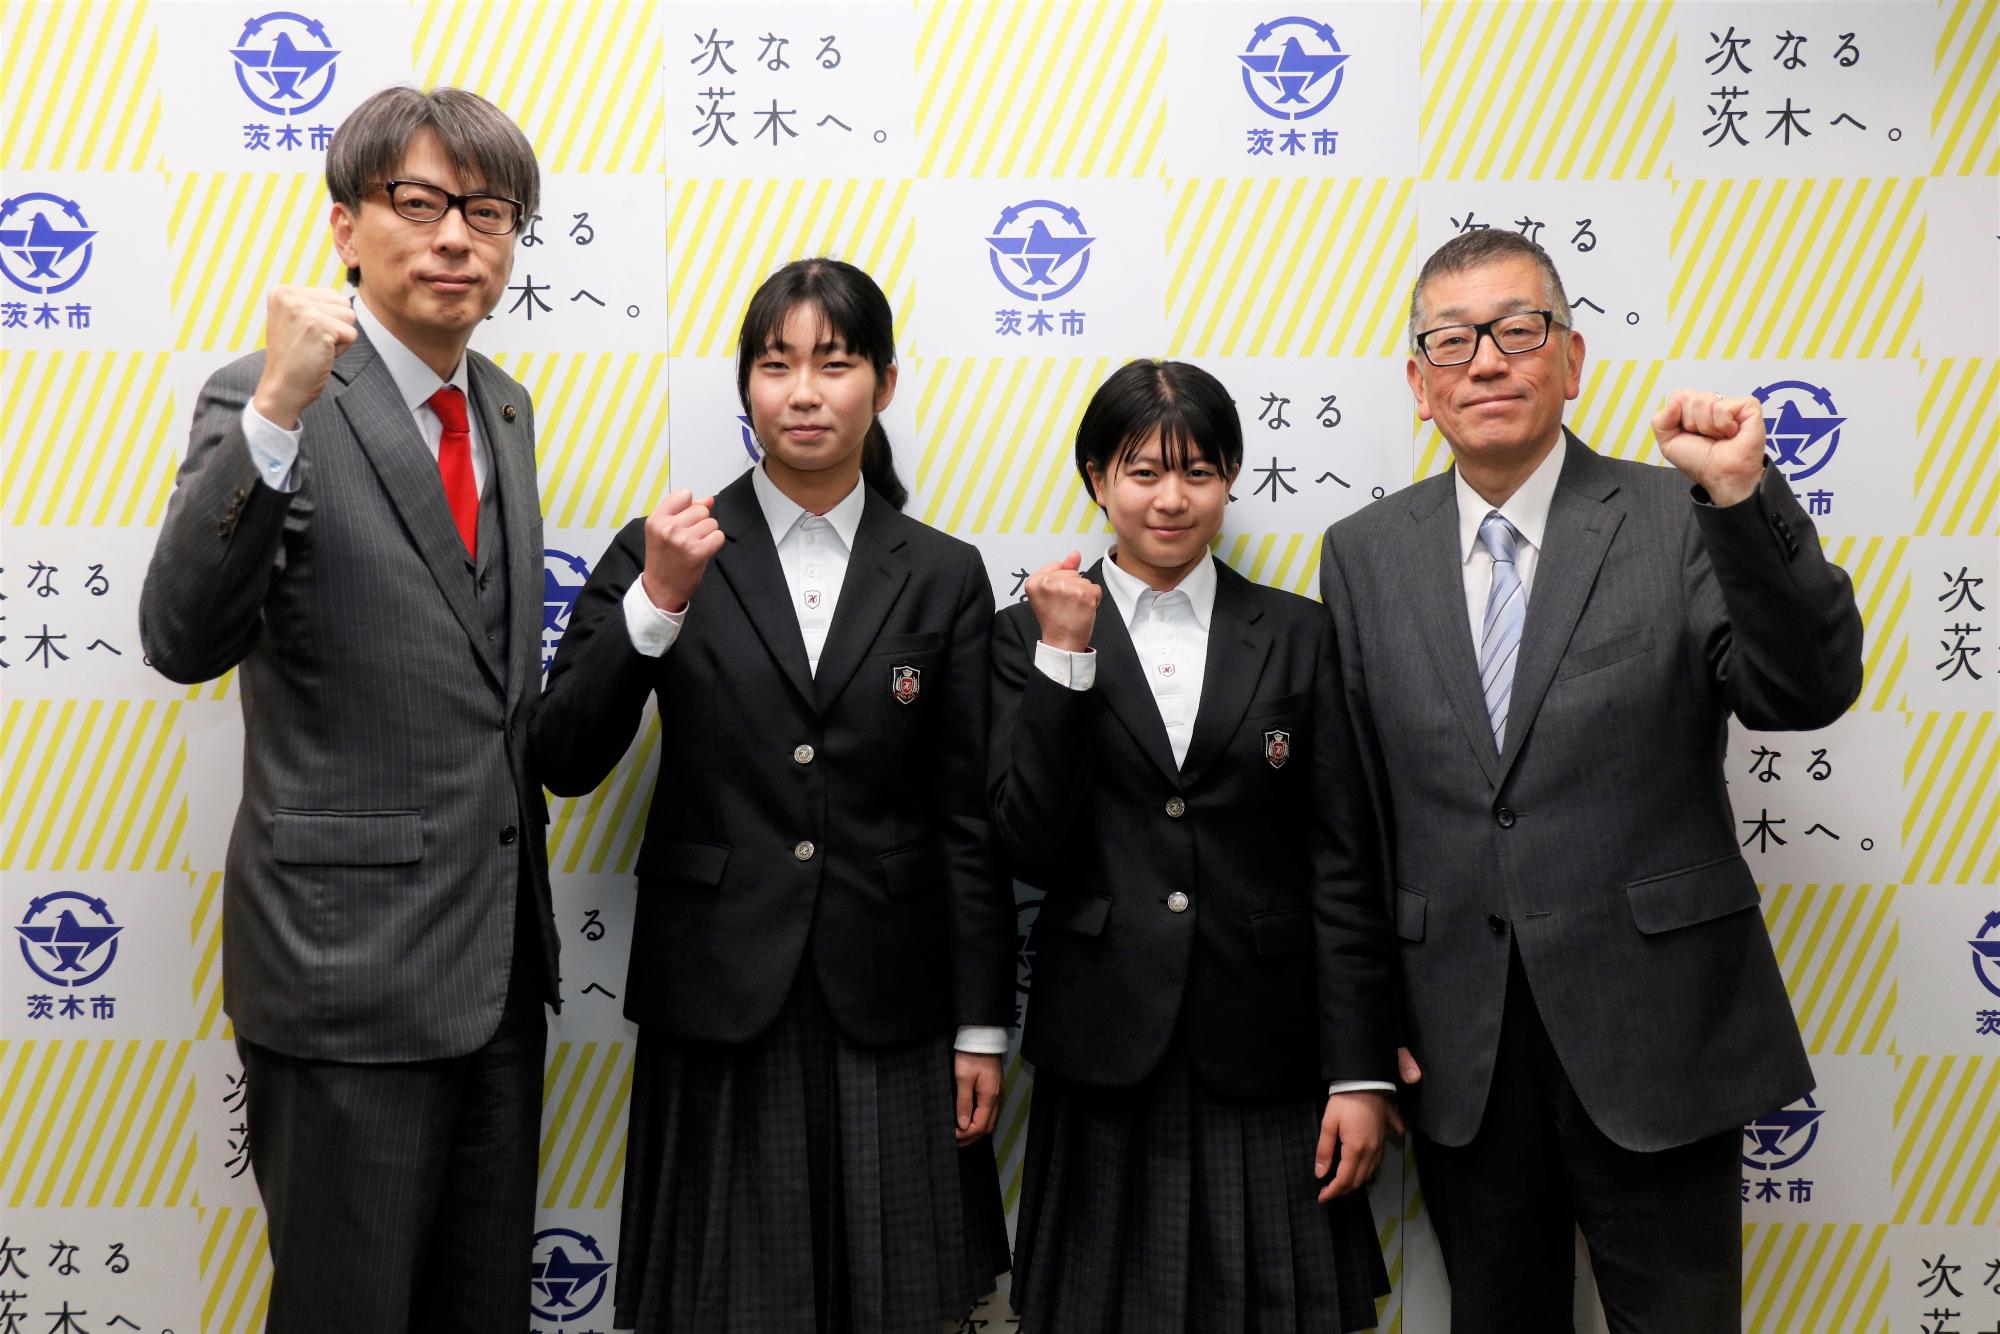 ガッツポーズをする平田中学校の皆さんと市長の写真